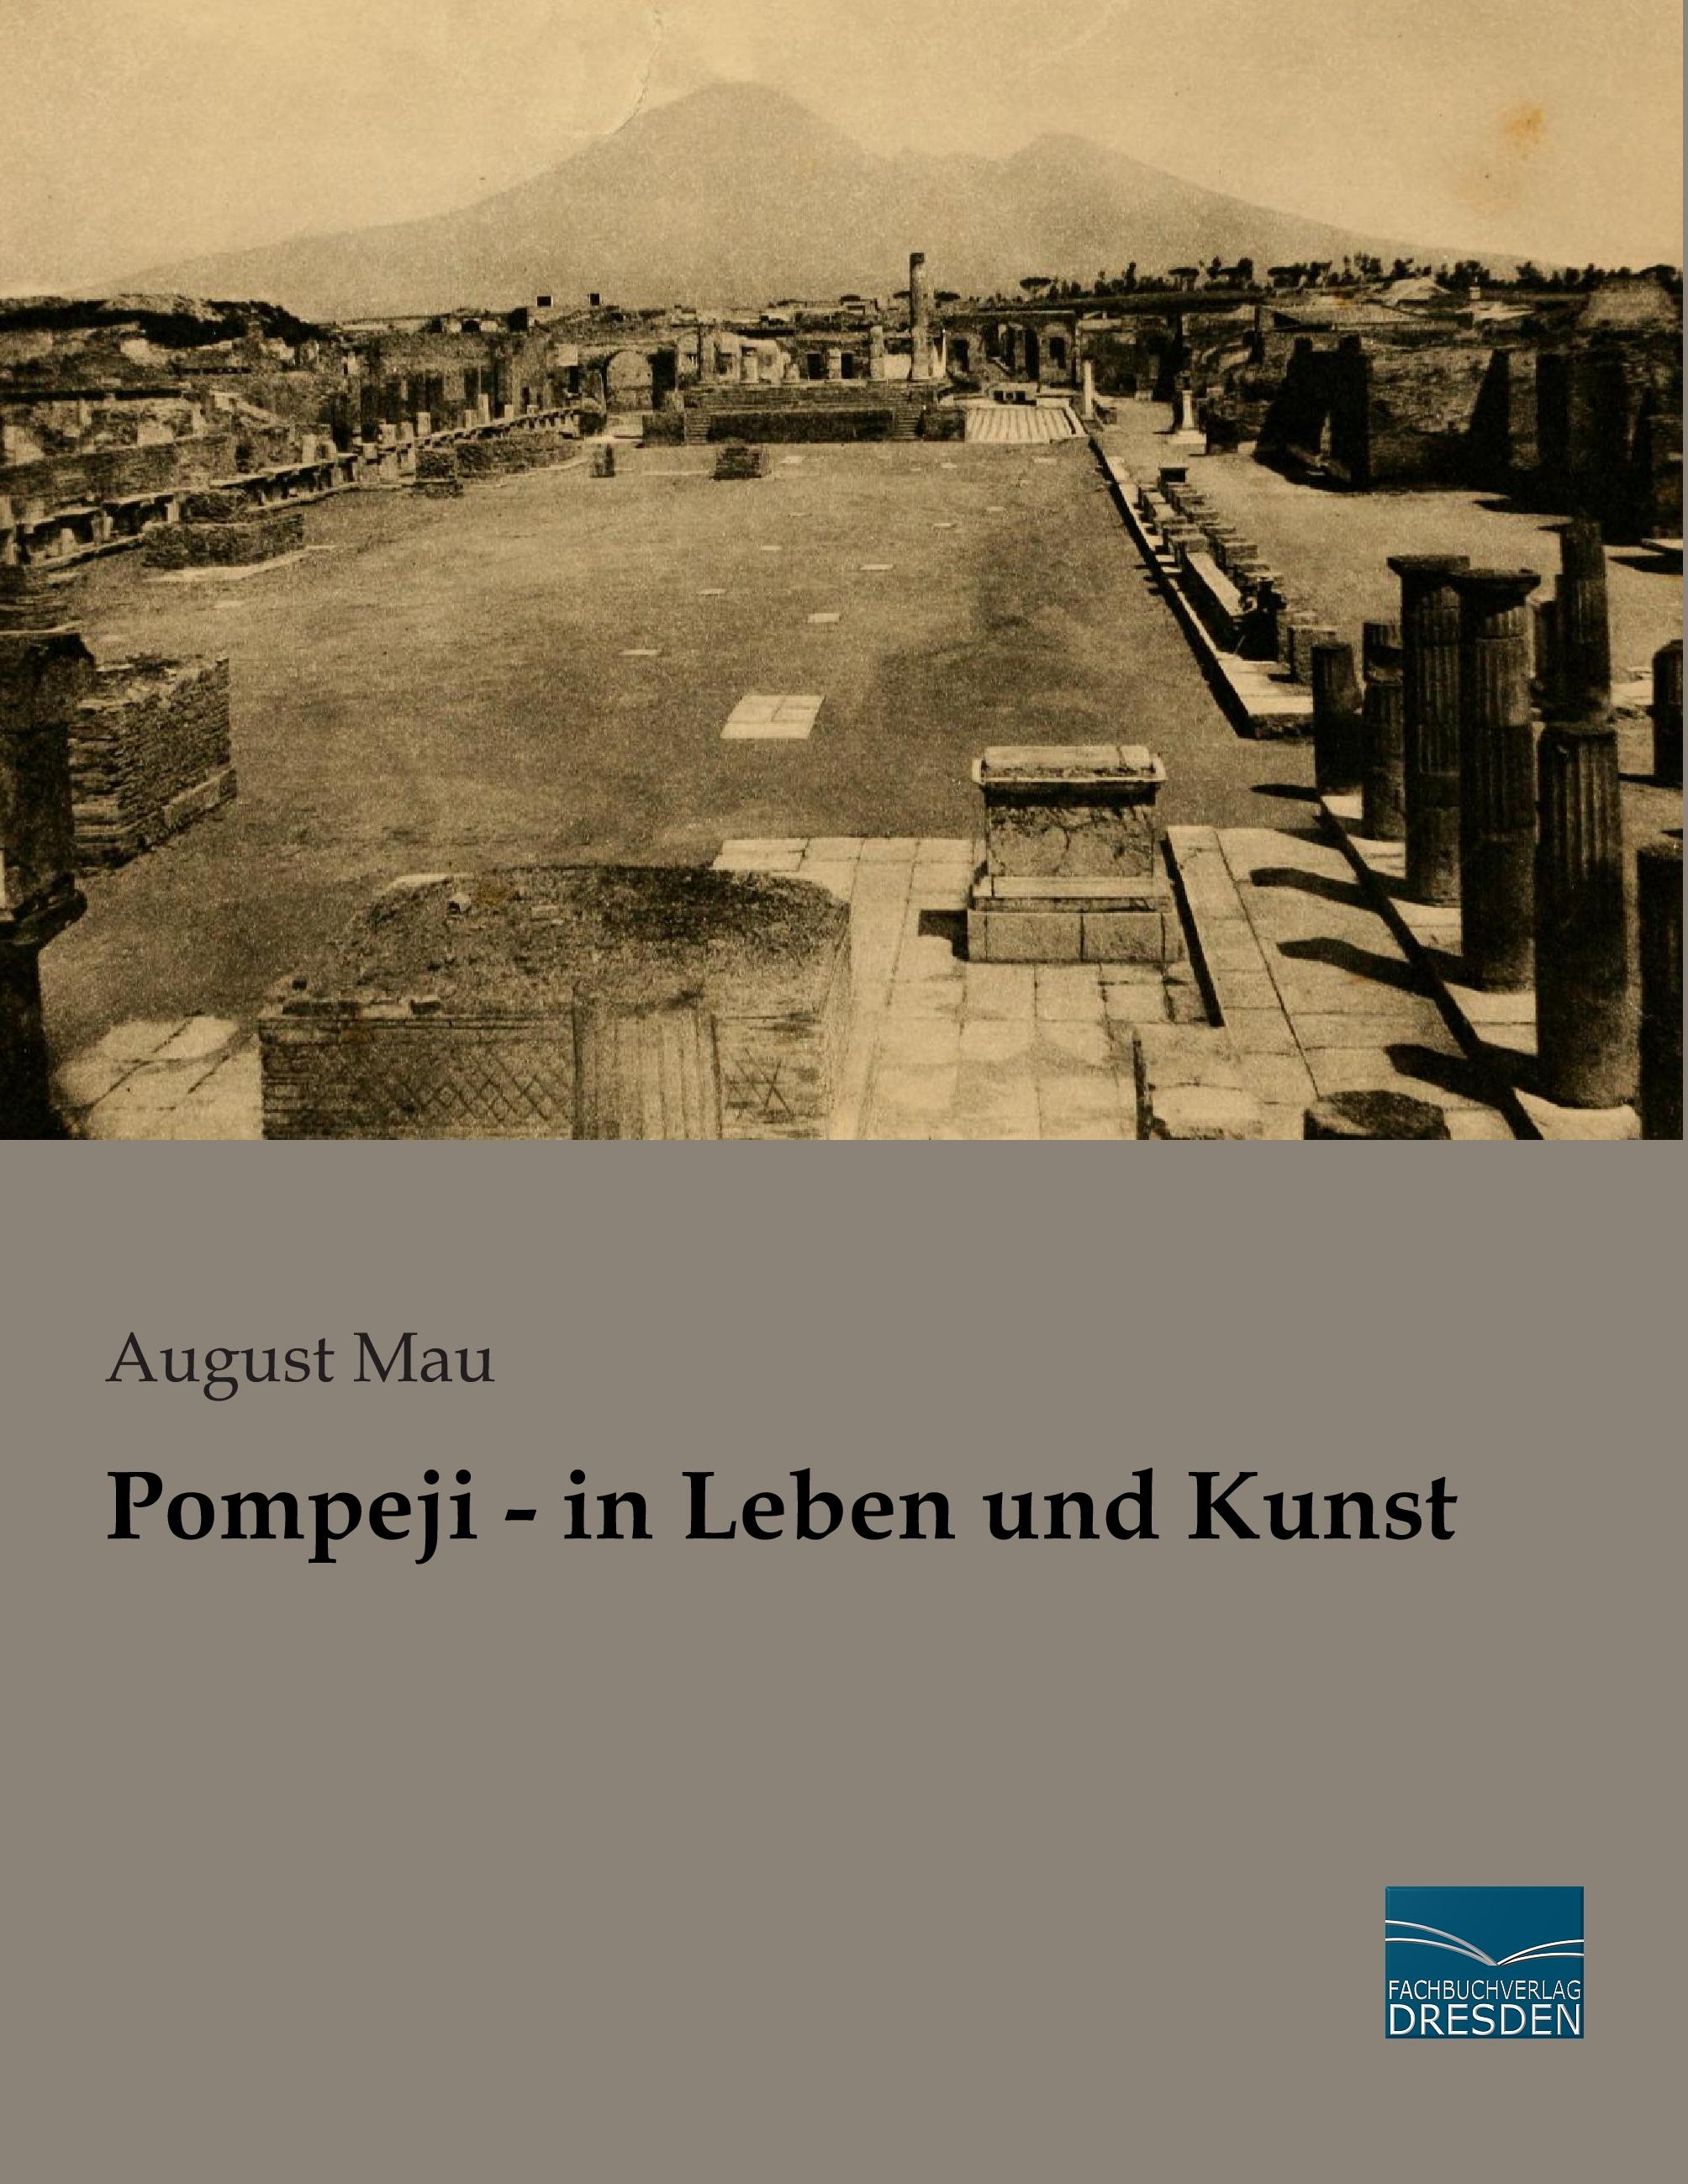 Pompeji - in Leben und Kunst / August Mau / Taschenbuch / Paperback / 636 S. / Deutsch / 2015 / Fachbuchverlag-Dresden / EAN 9783956927171 - Mau, August